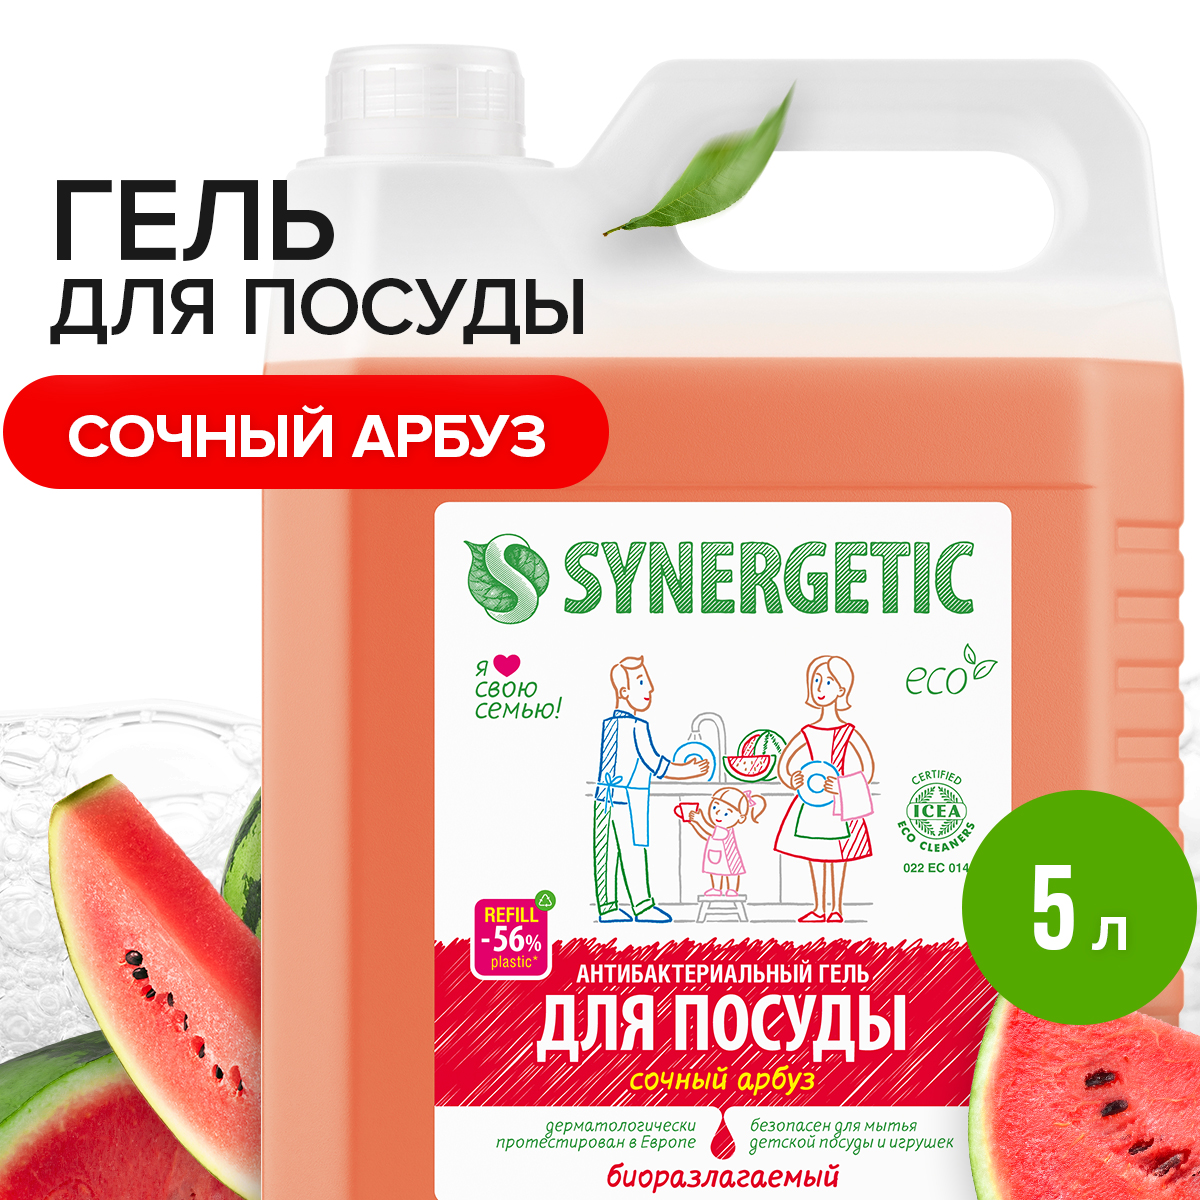 Средство для посуды, овощей и фруктов SYNERGETIC «Сочный арбуз» антибактериальное, 5 л - купить в Мегамаркет Москва Пушкино, цена на Мегамаркет